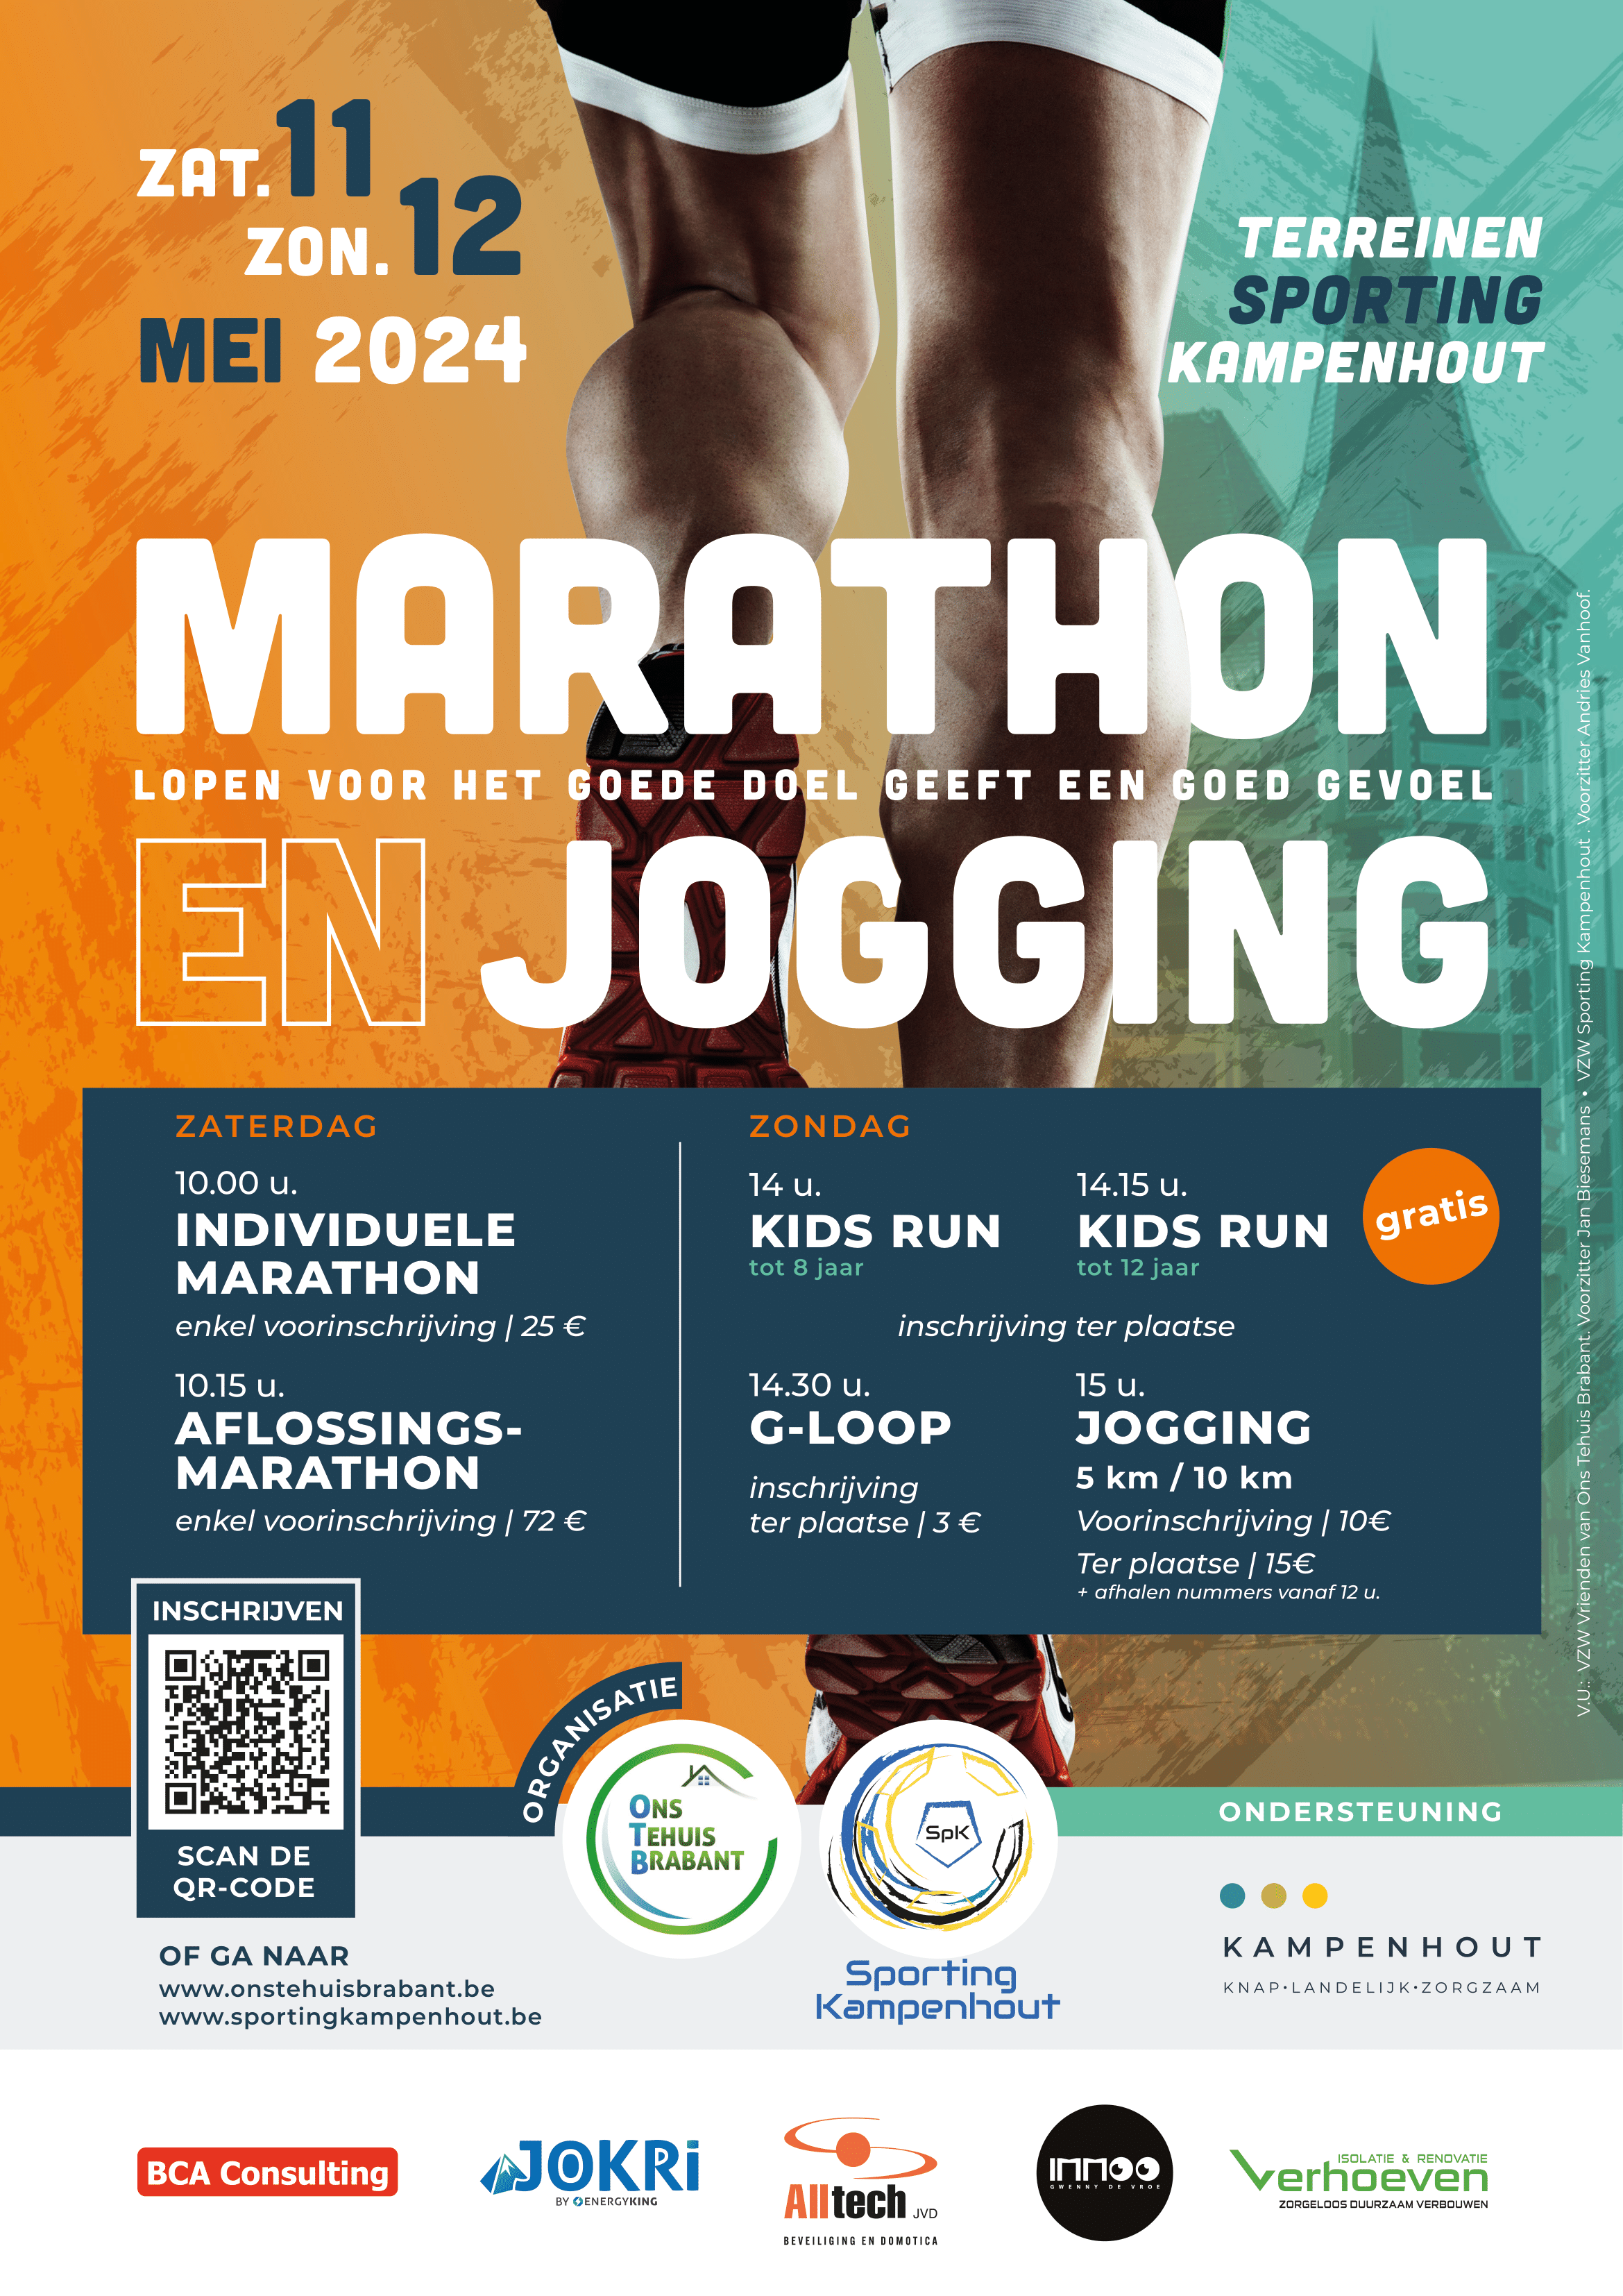 Marathon en jogging